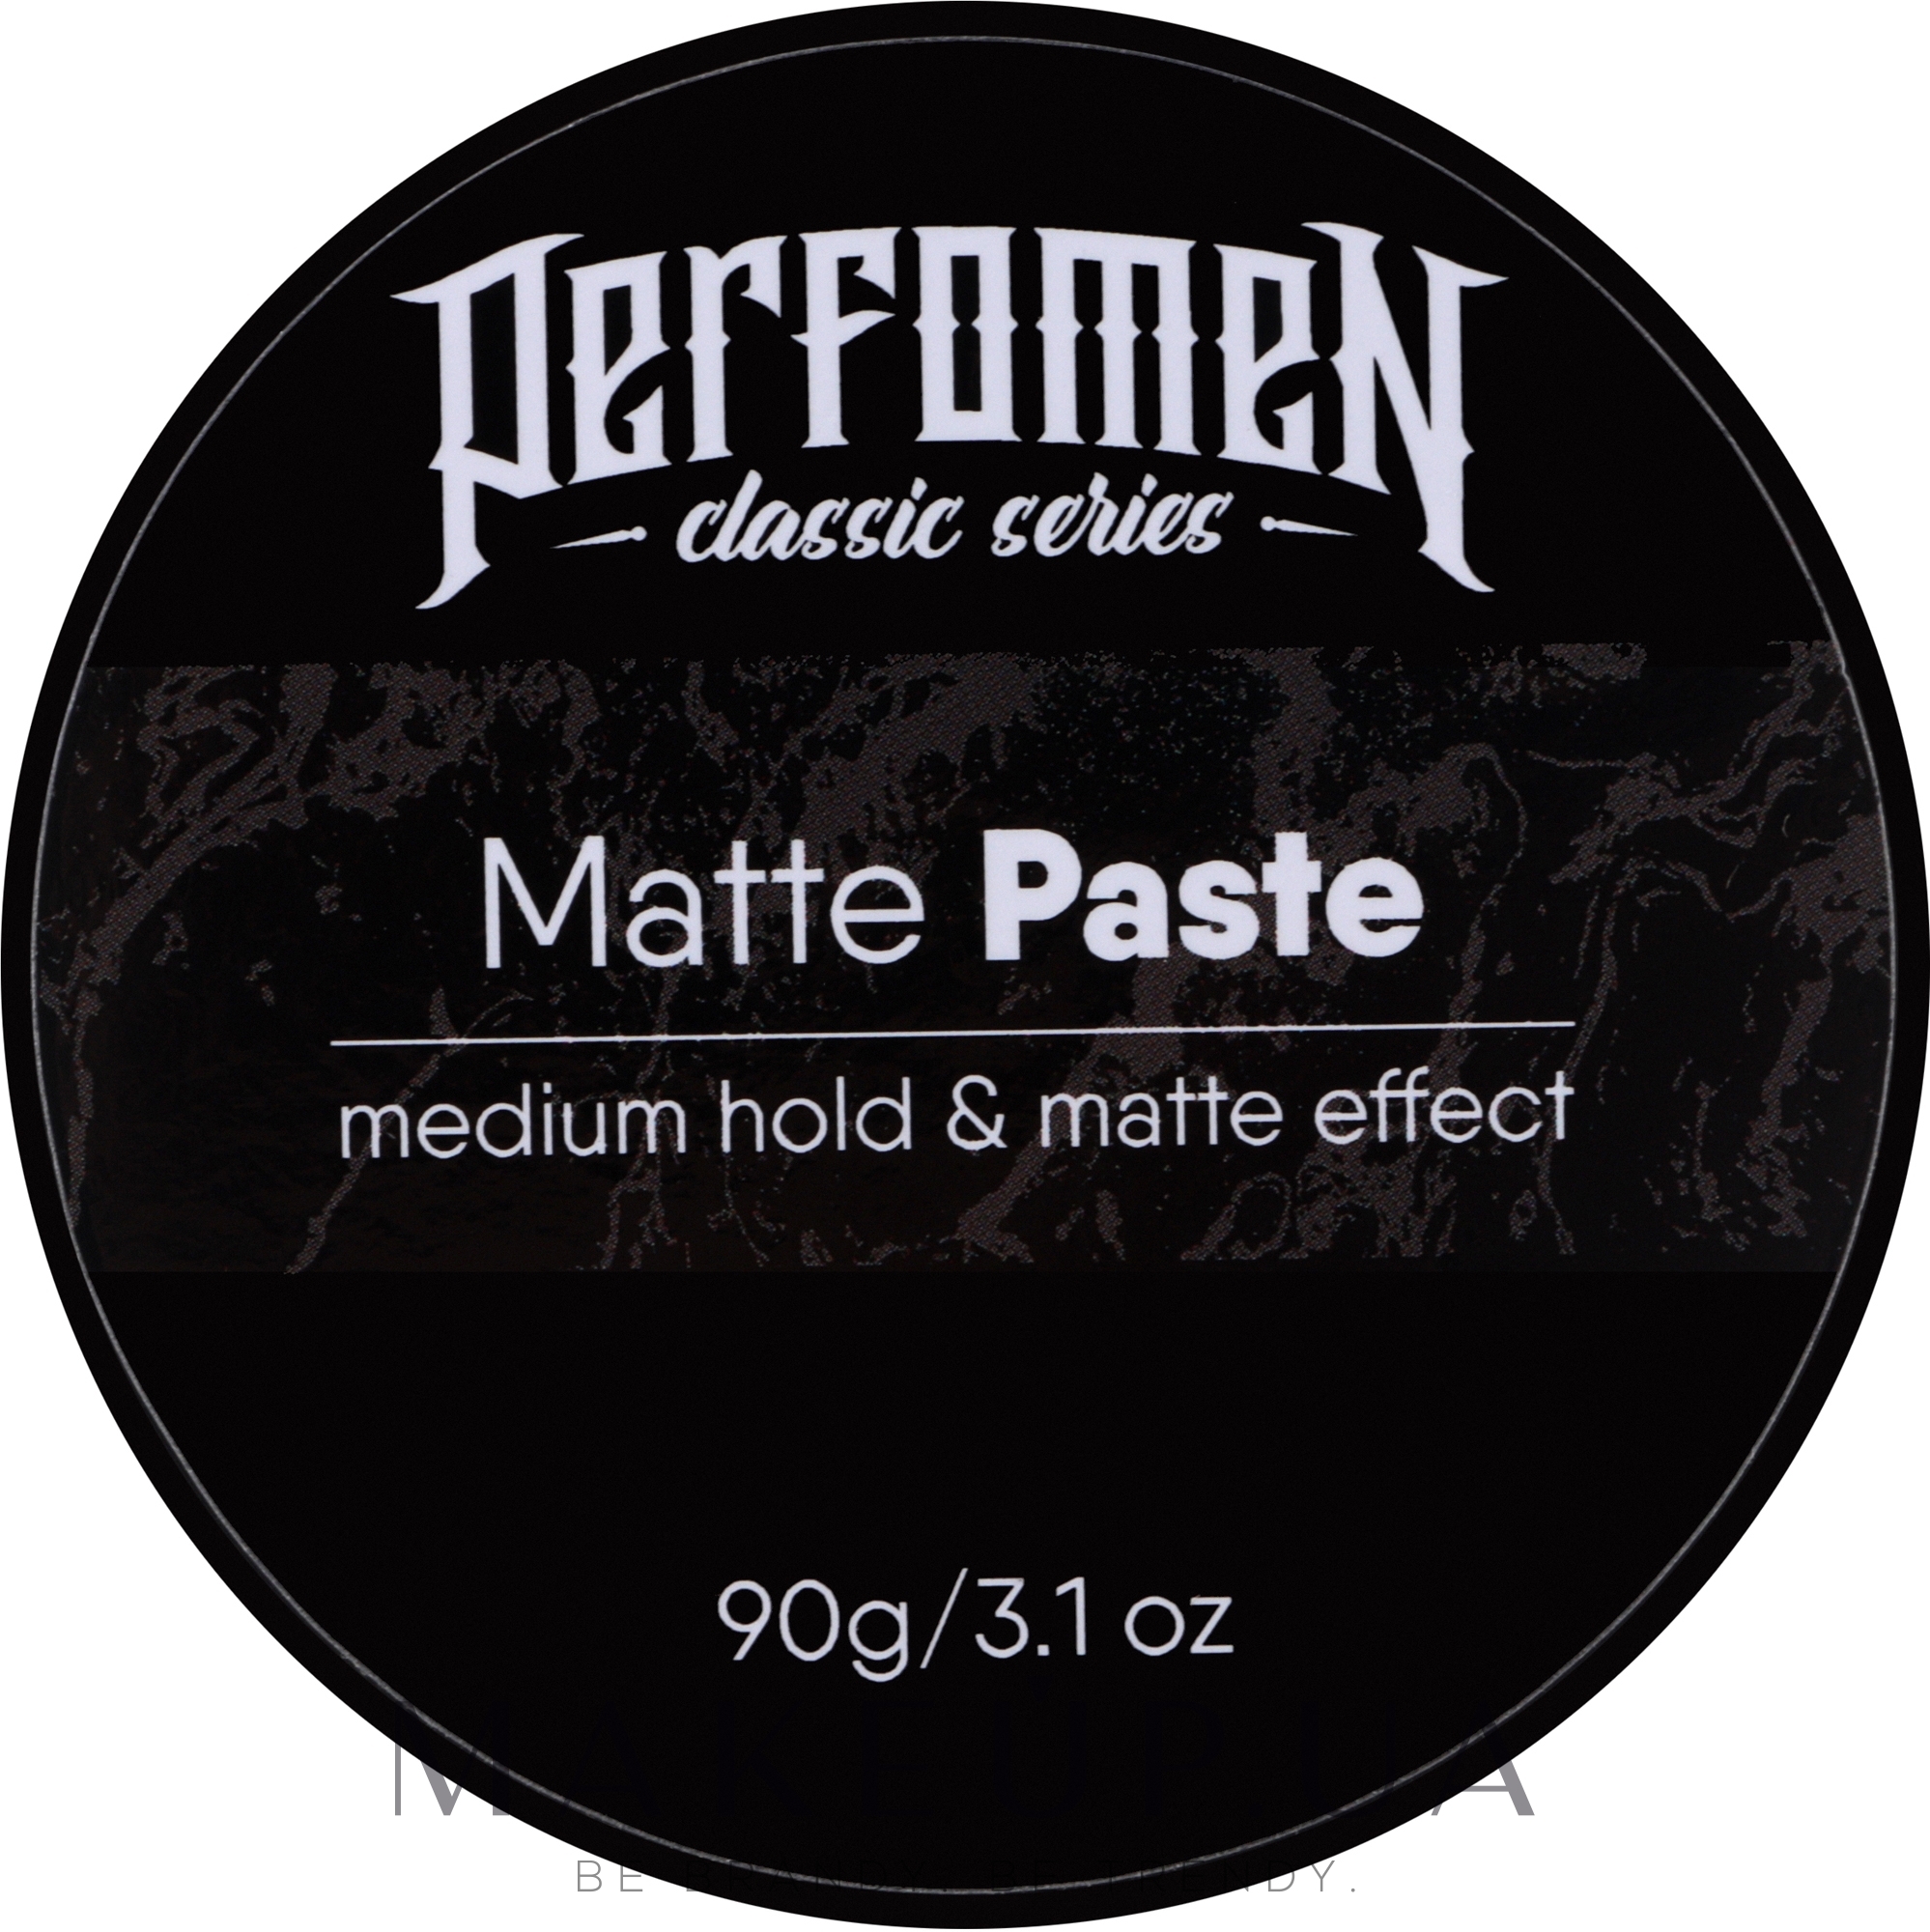 Матова паста - Perfomen Classic Series Matte Paste — фото 90g